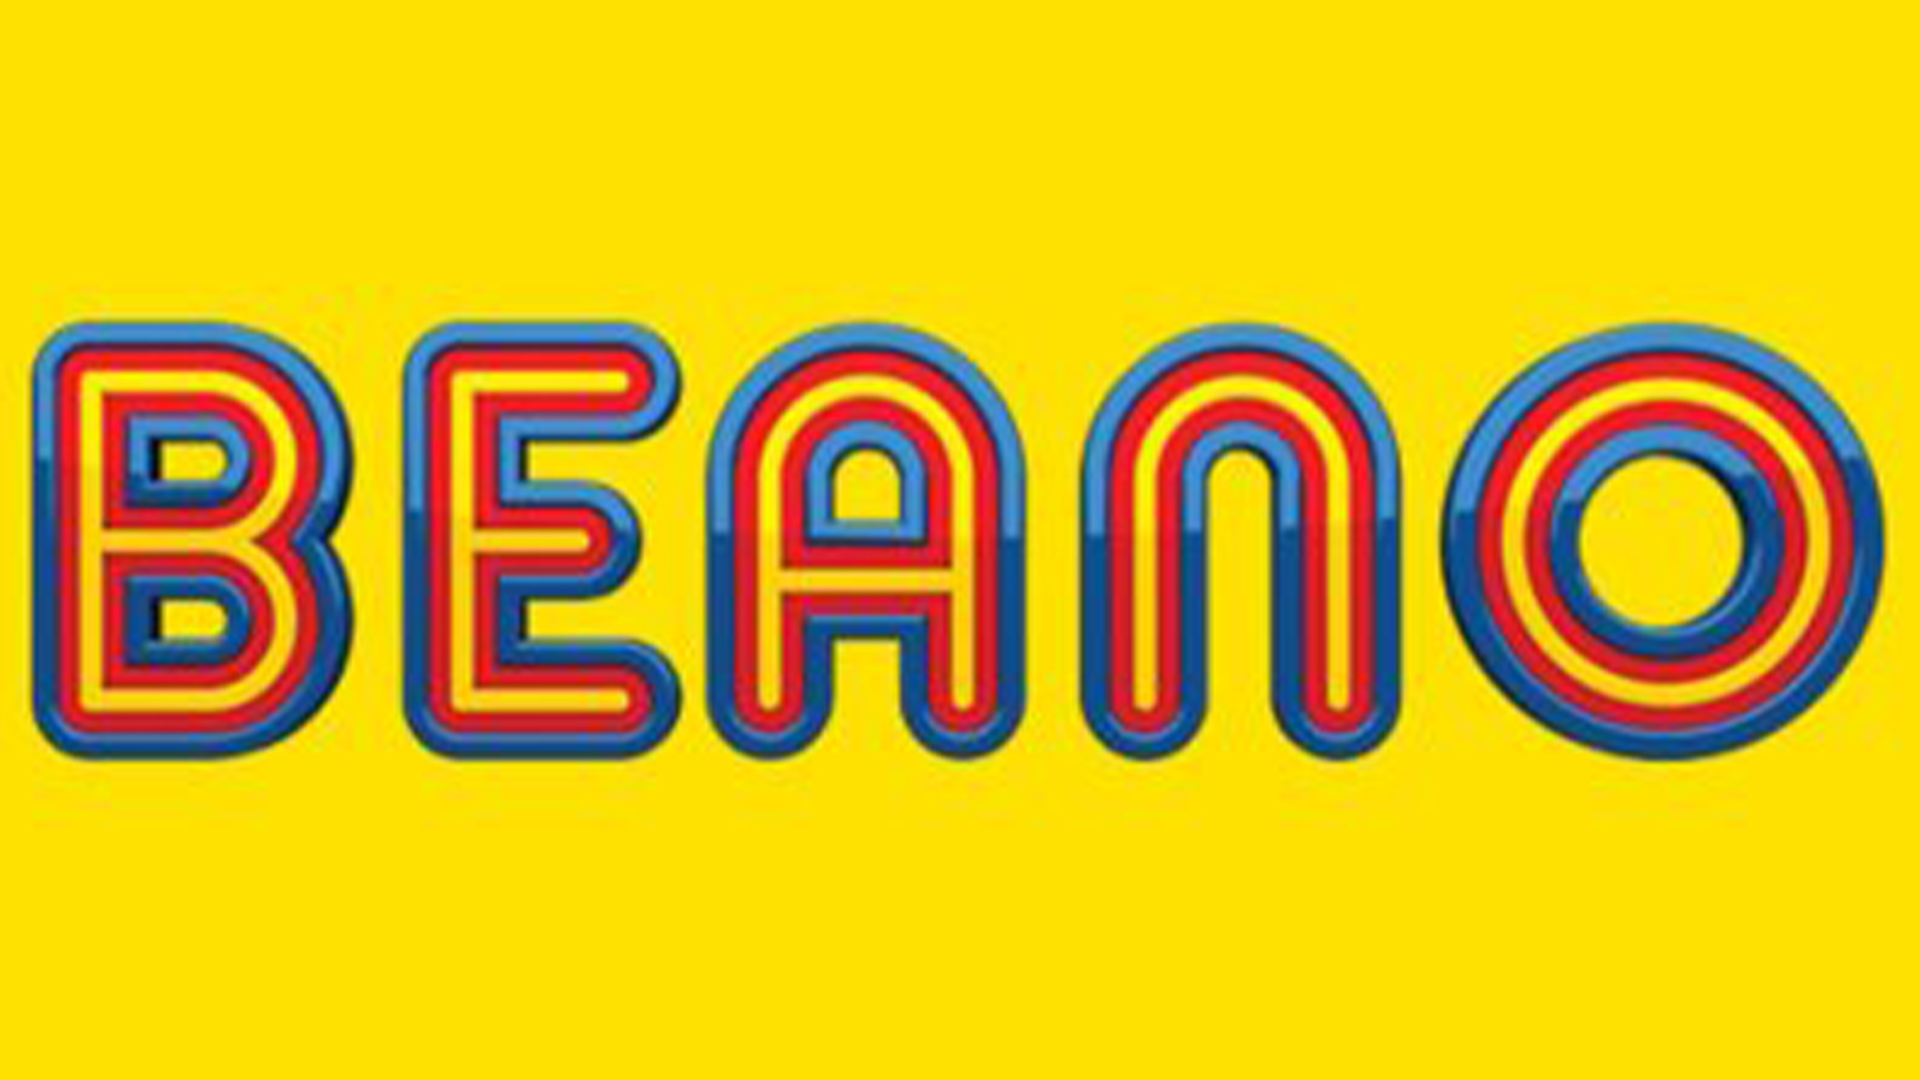 Beano Logo 